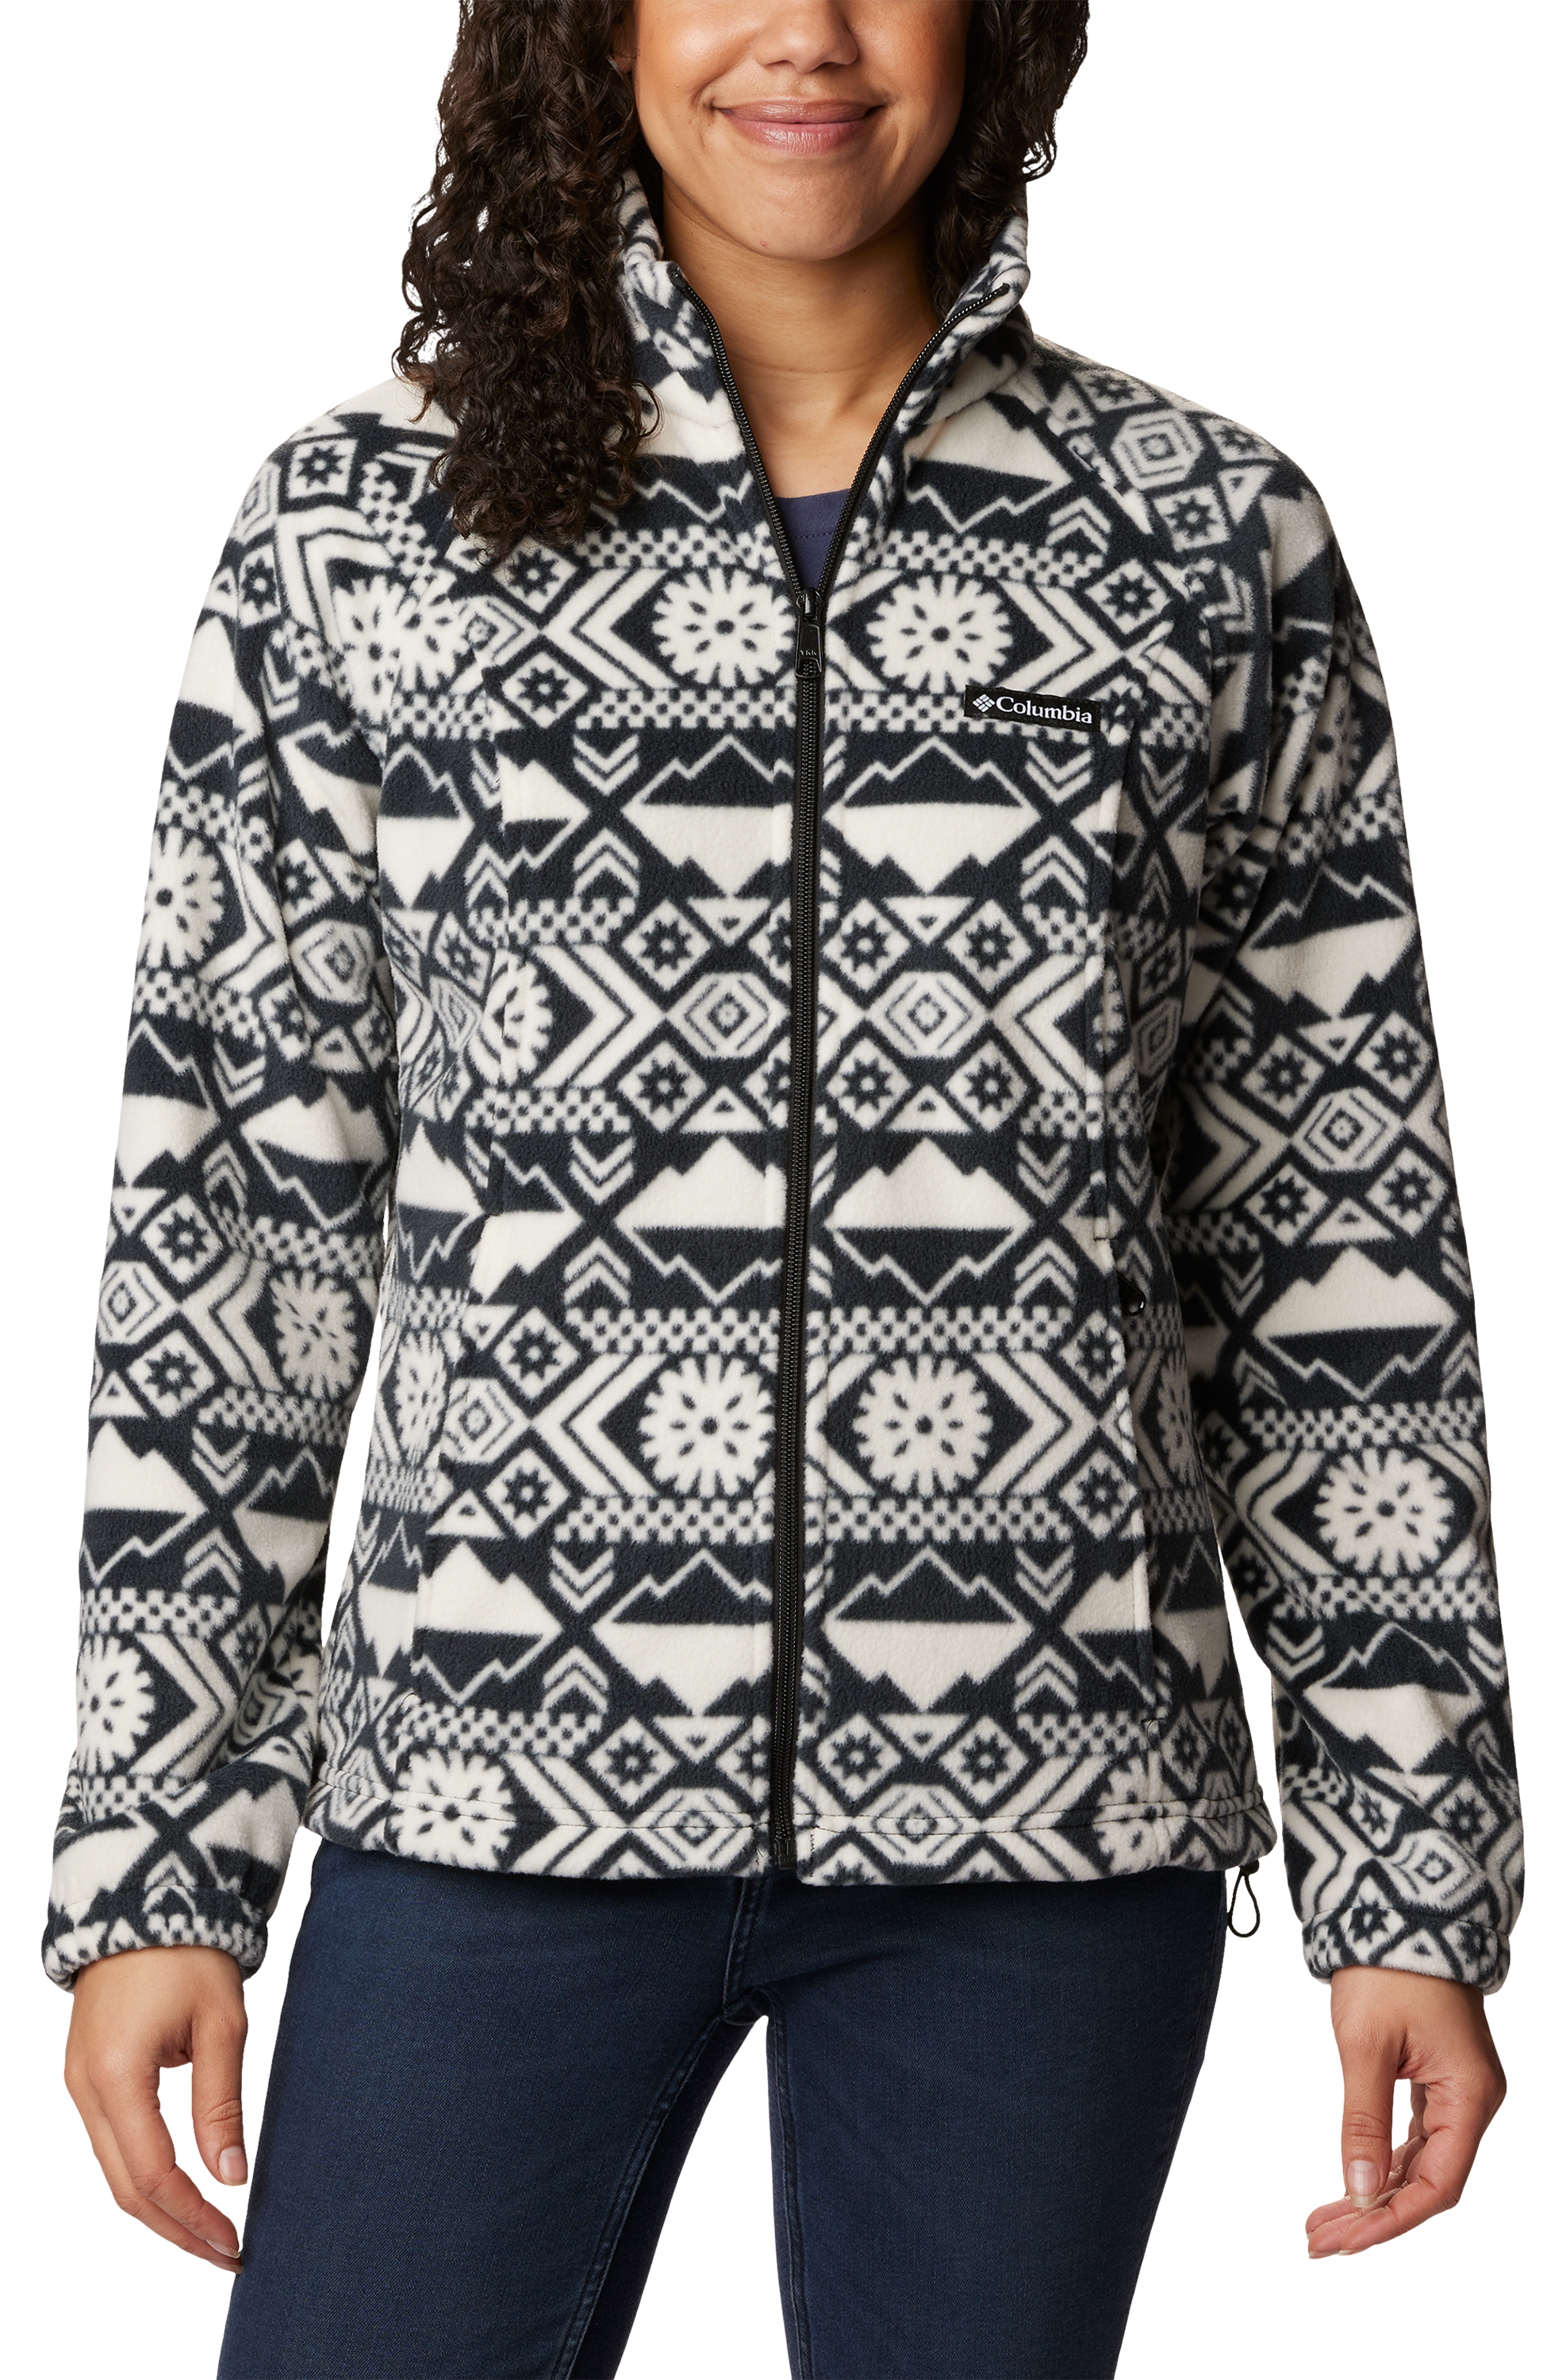 Columbia - Women's Benton Springs™ Fleece Full-Zip Jacket - 137211 -  Century Marketing, Inc.